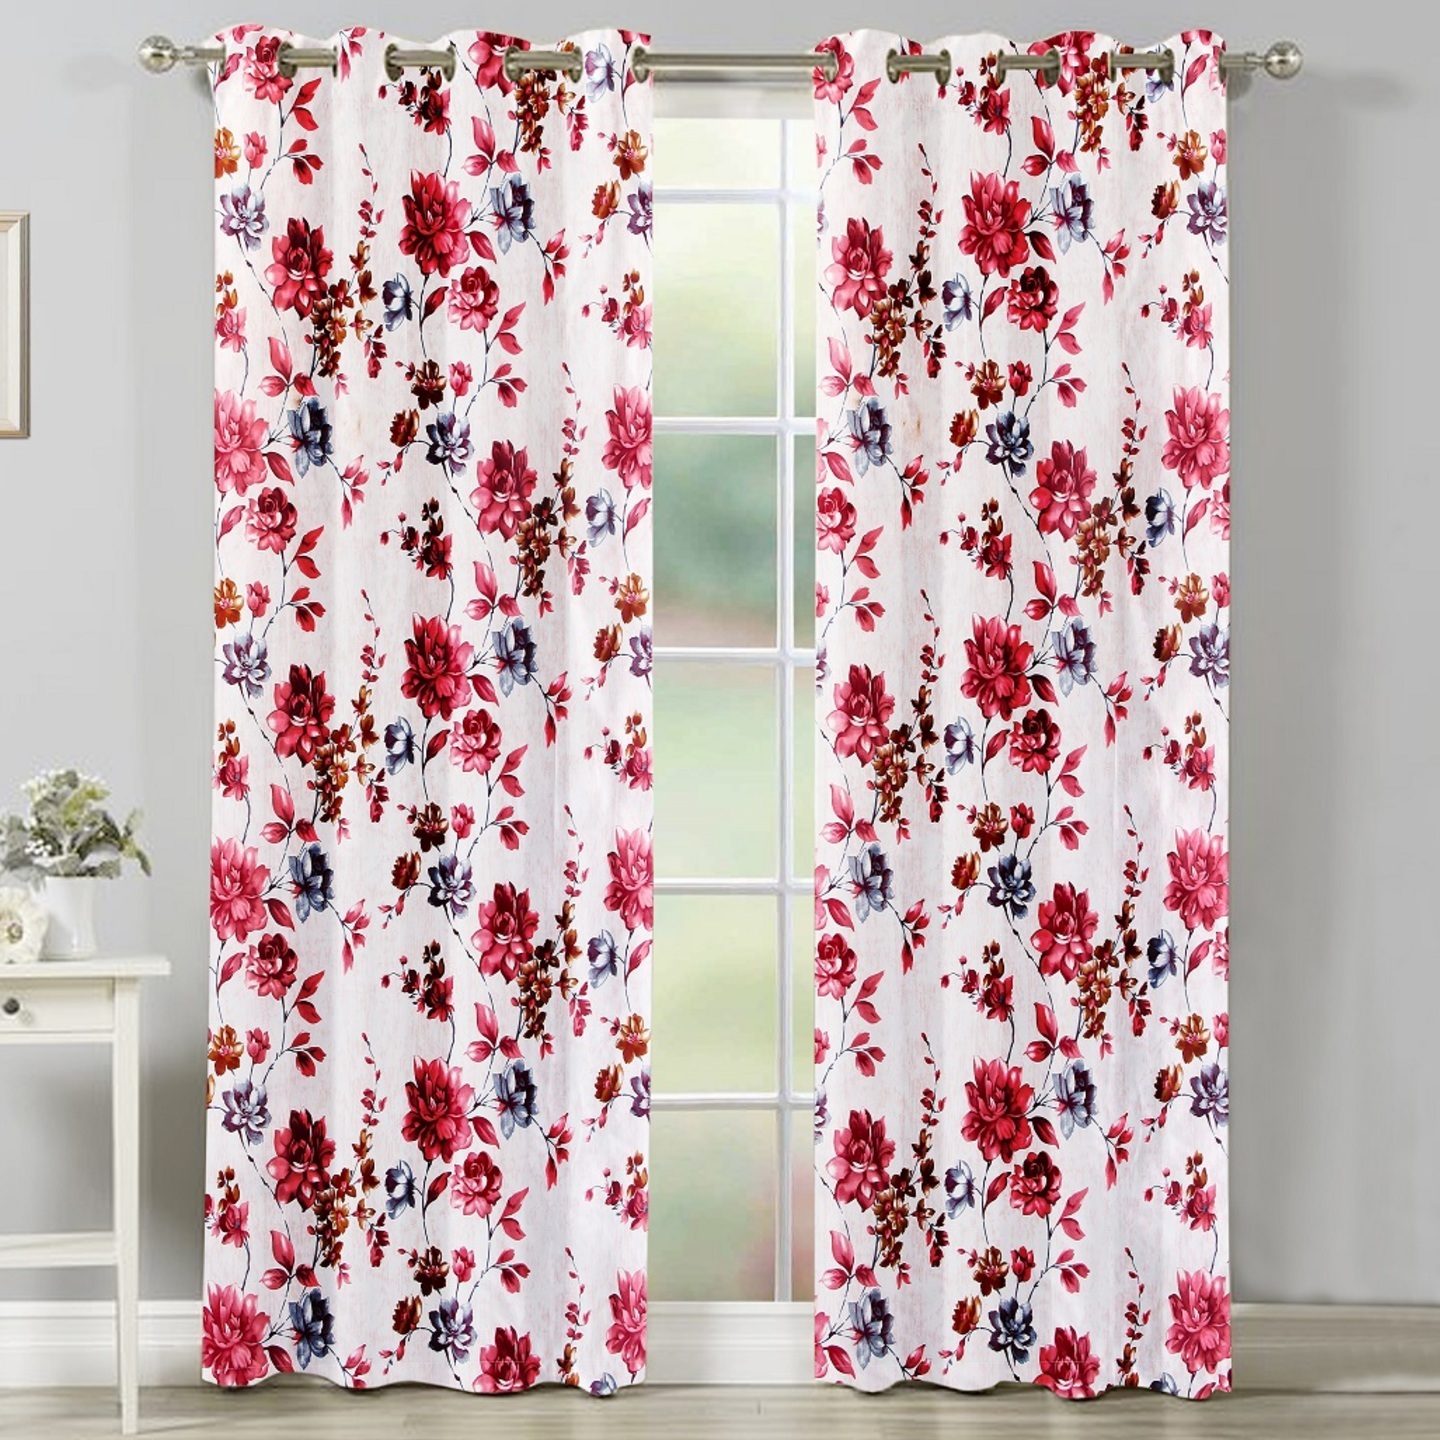 Handtex Home Floral Design Door Curtains 4x9 feet Set of 2 pcs Maroon